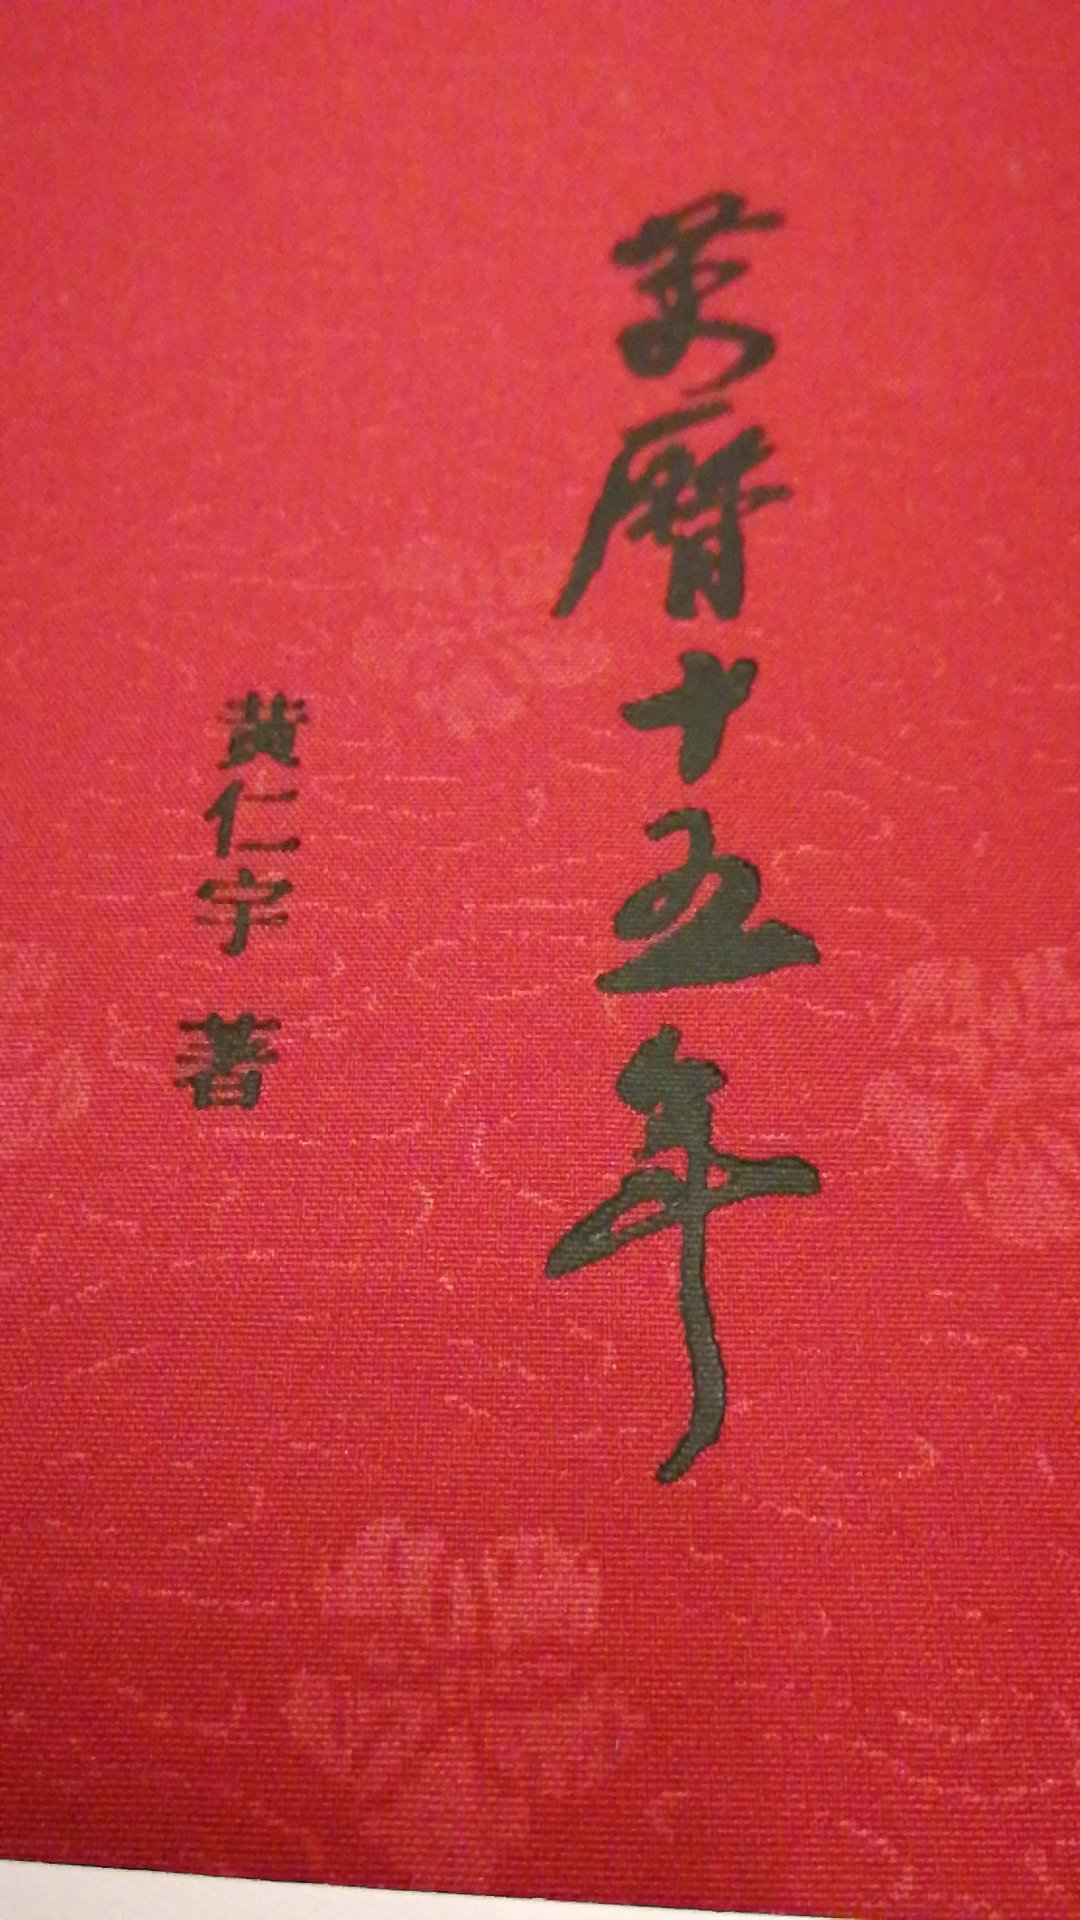 中华书局的书，封面精致，书纸张非常好，印刷清晰，工整，插图精美。